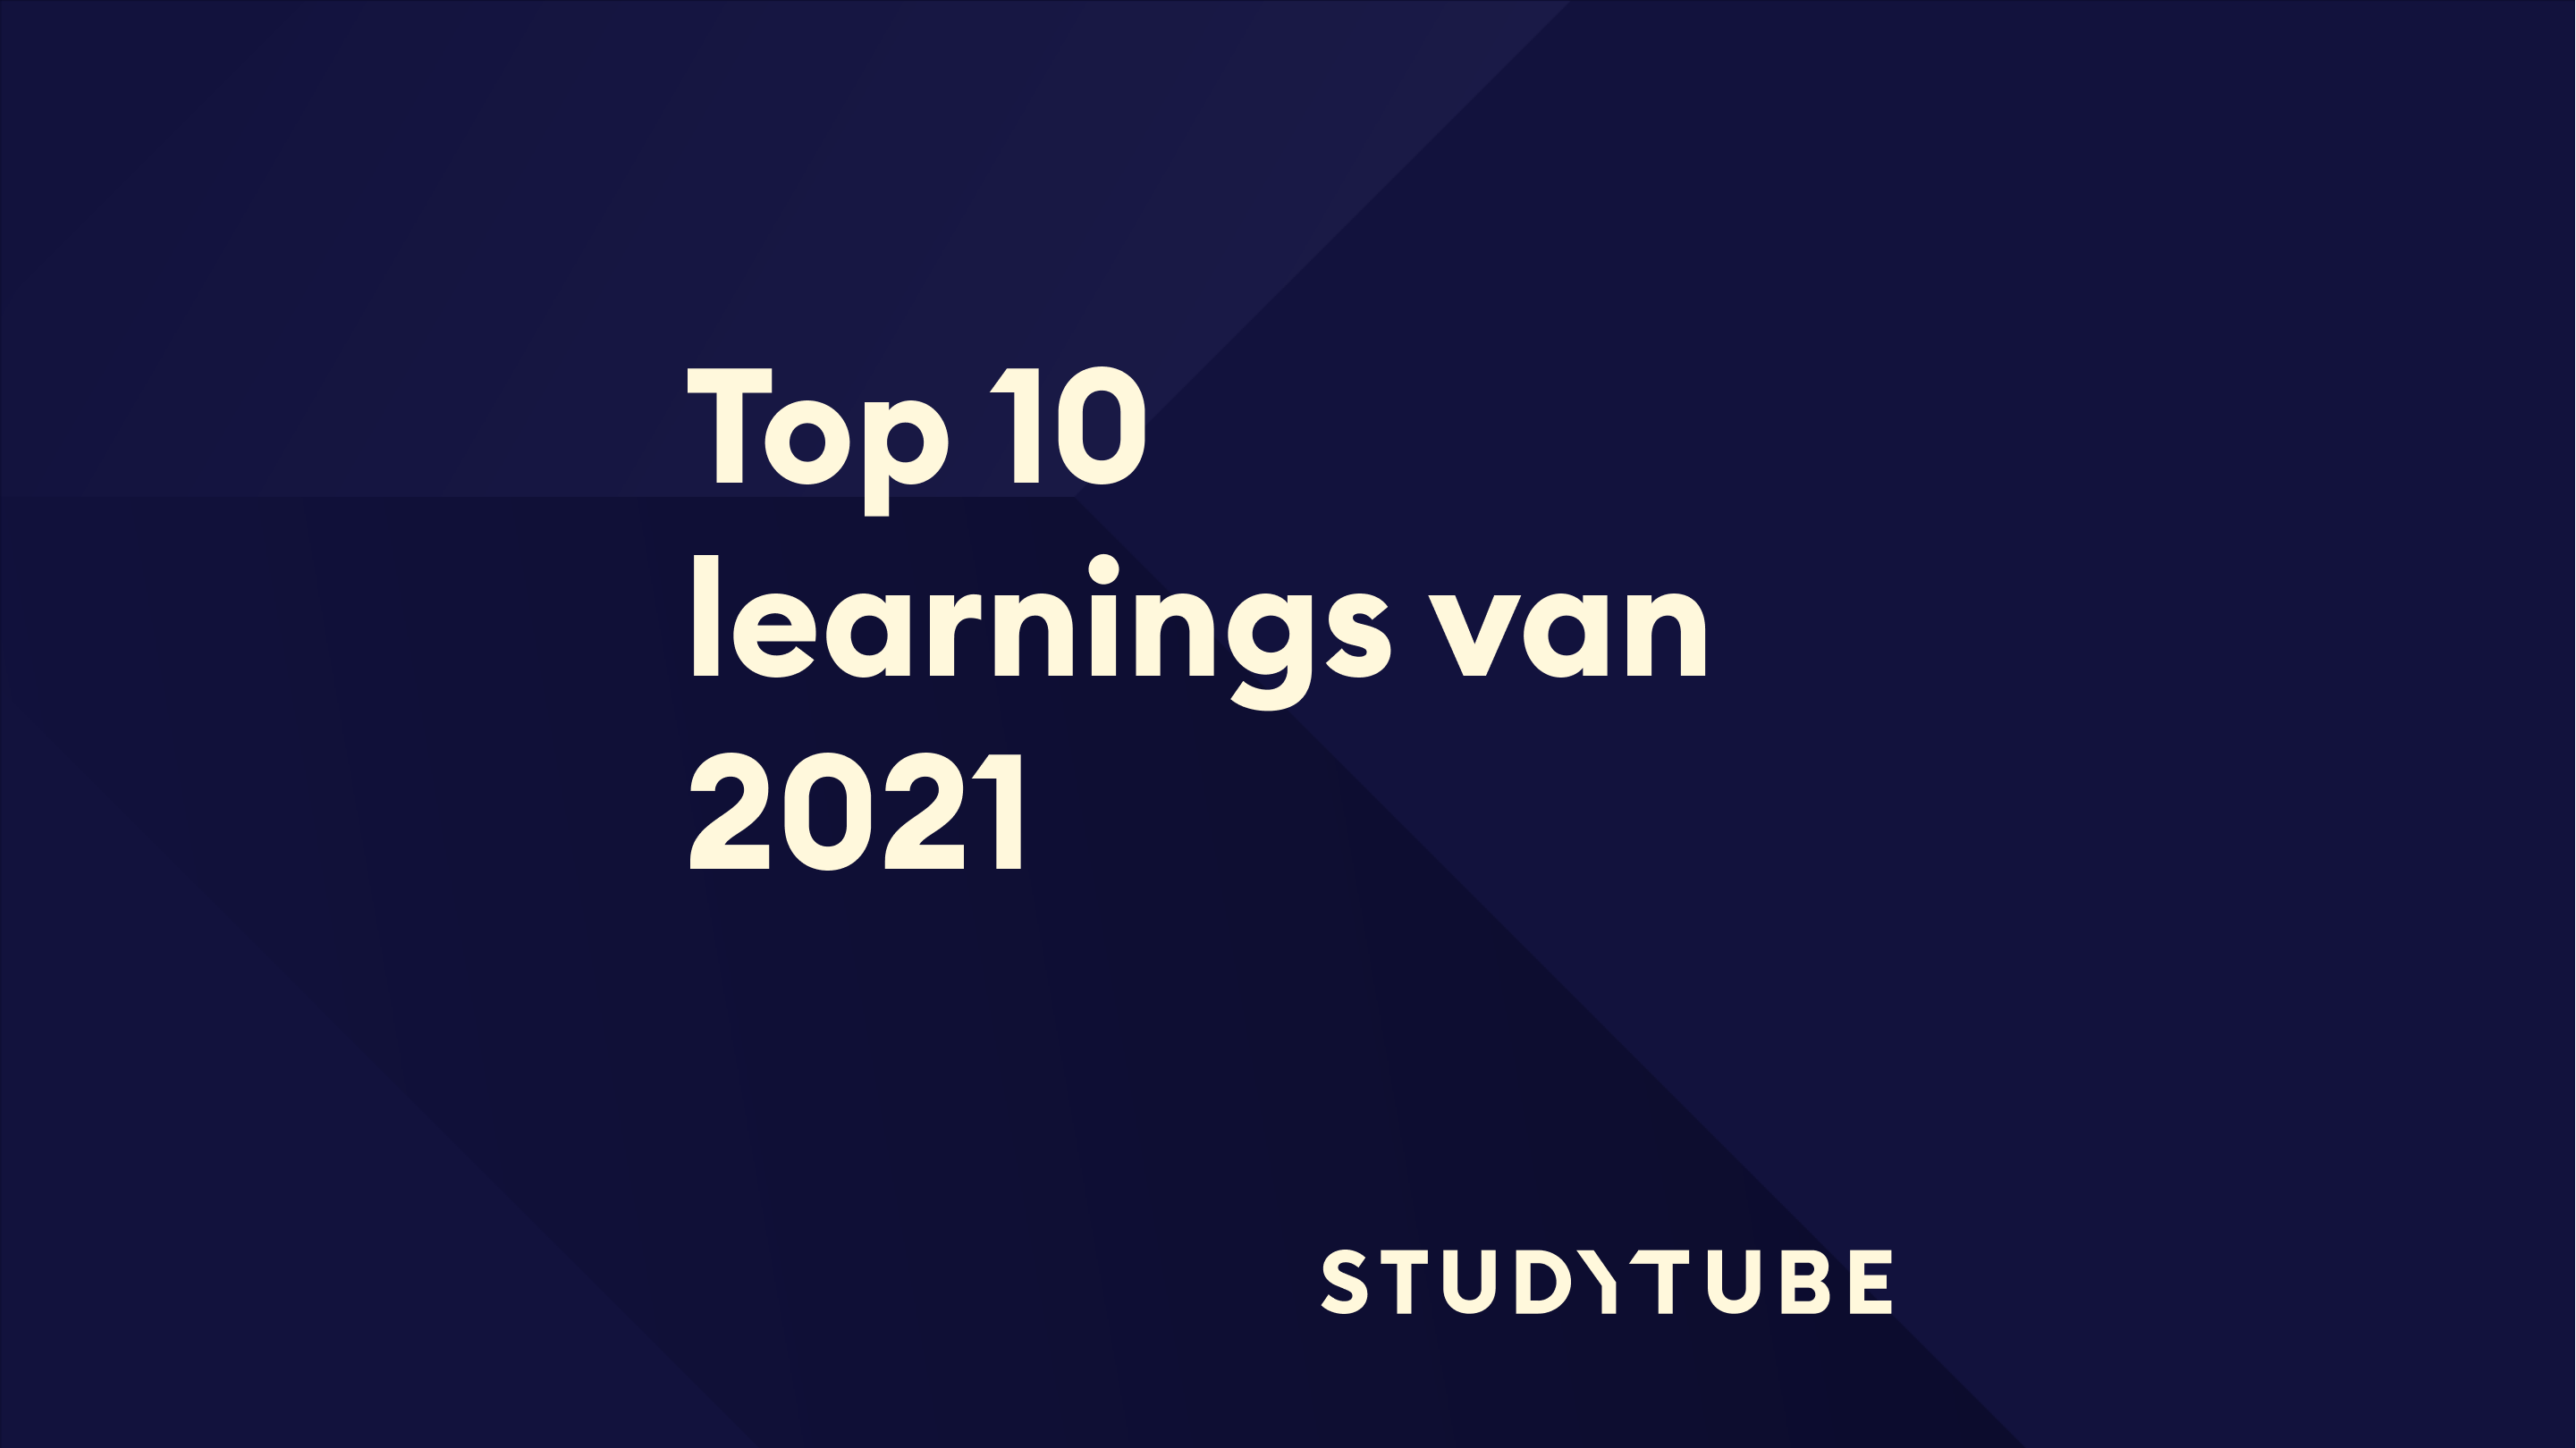 De top-10 learnings van 2021, Studytube